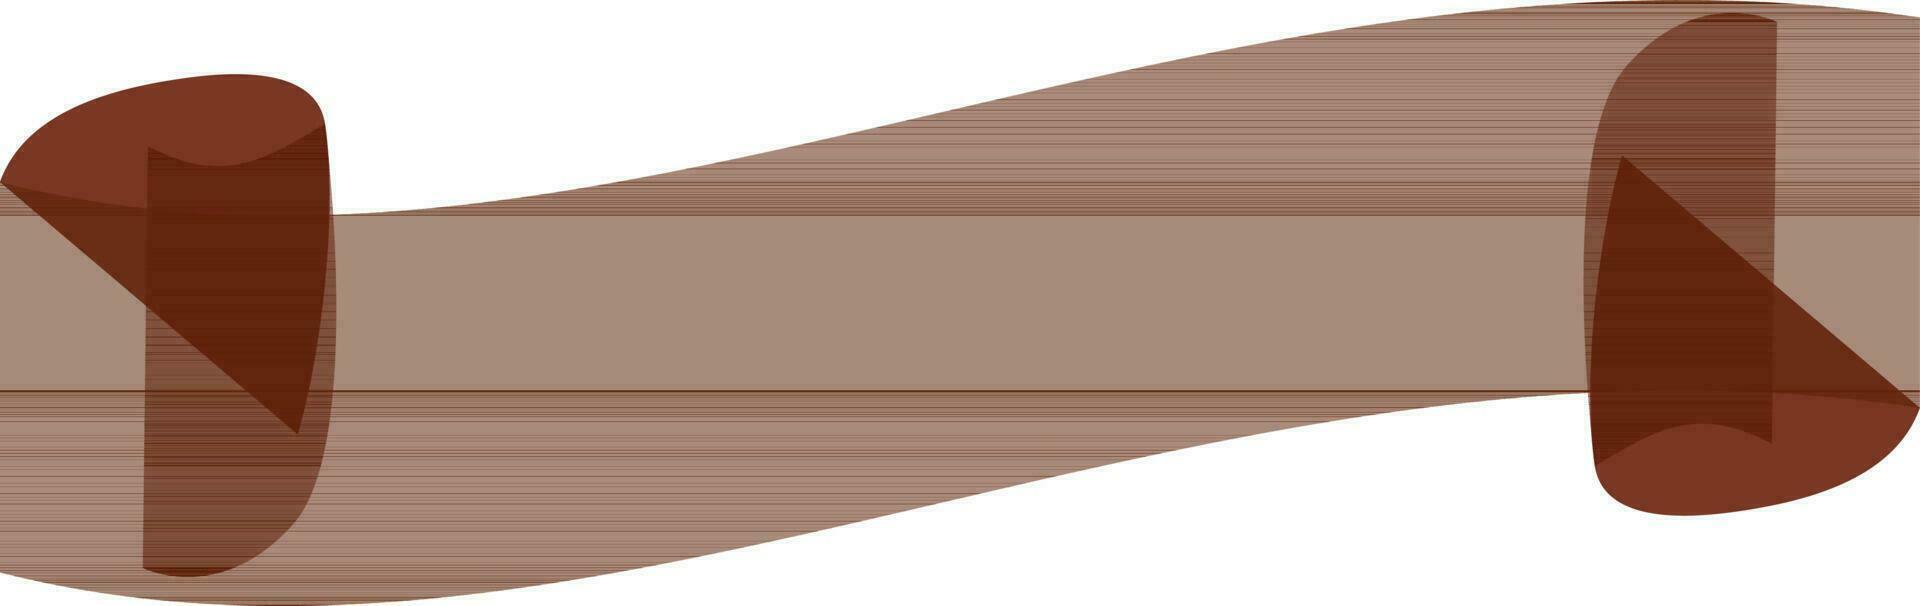 plat illustration de une Vide ruban. vecteur